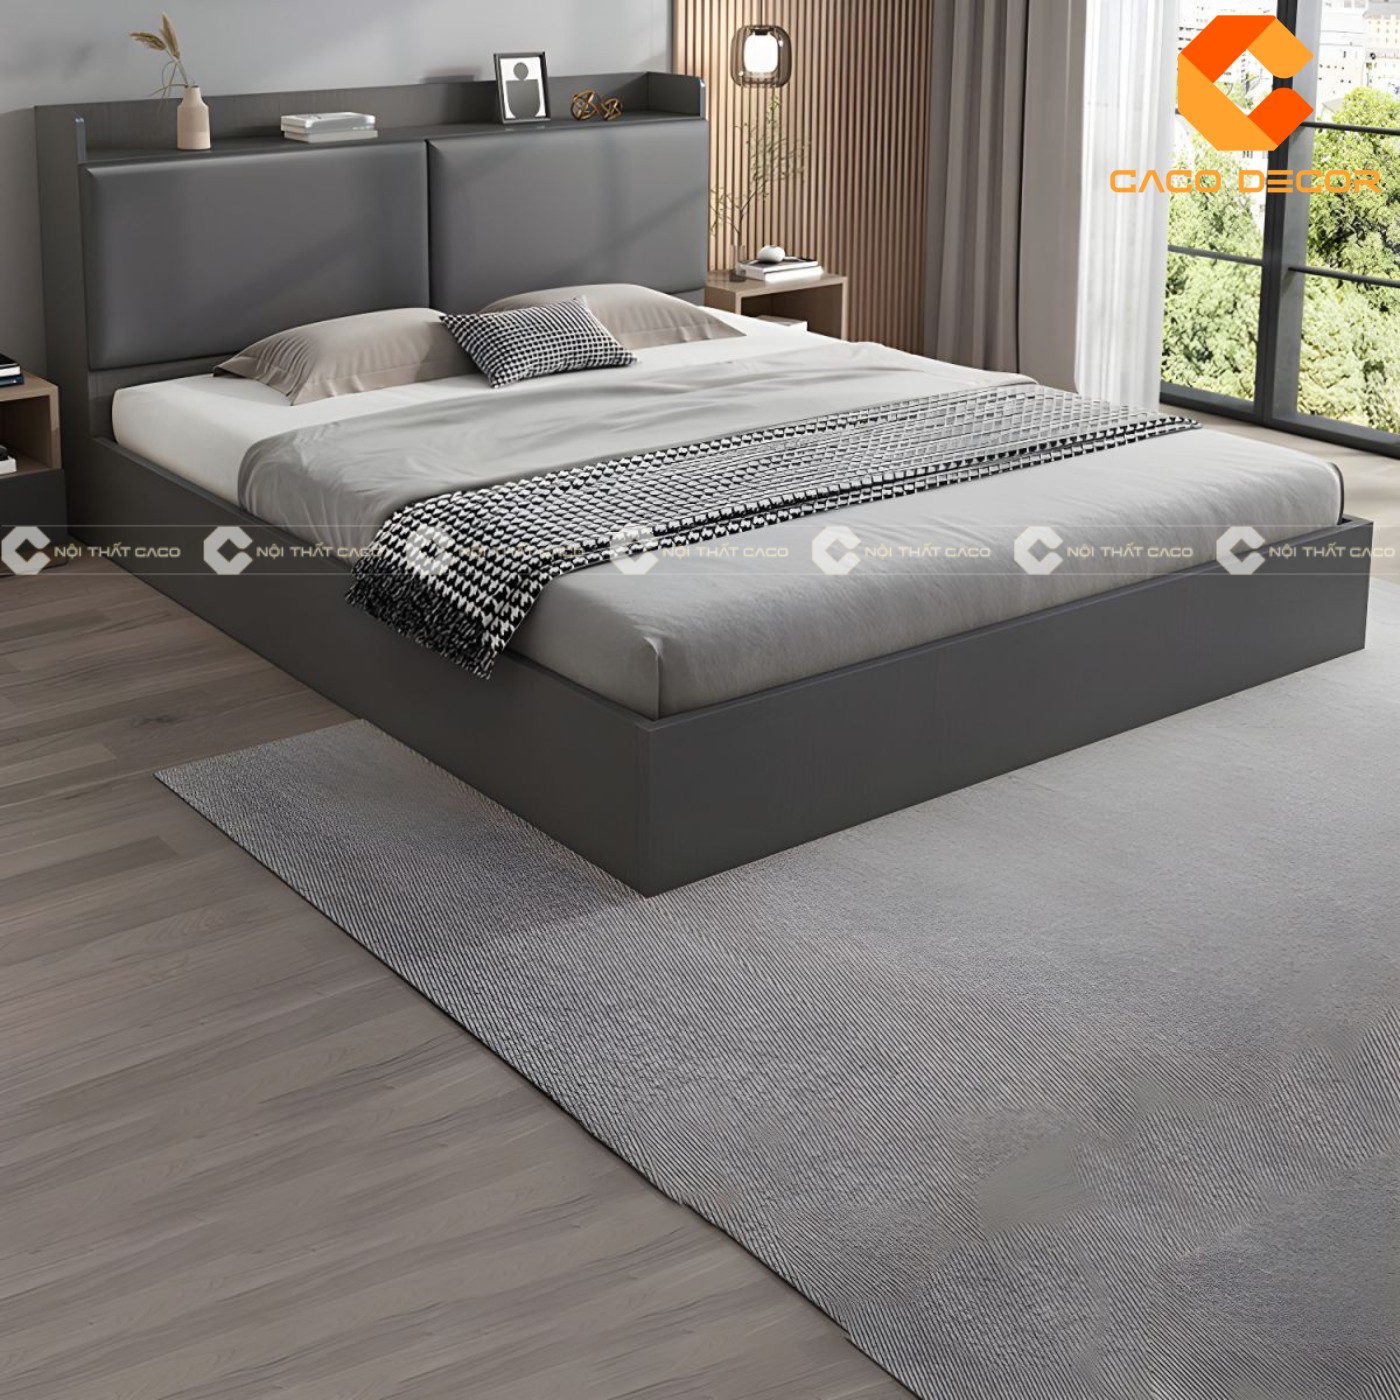 Giường ngủ gỗ công nghiệp đẹp, chất lượng với giá tốt nhất thị trường 6